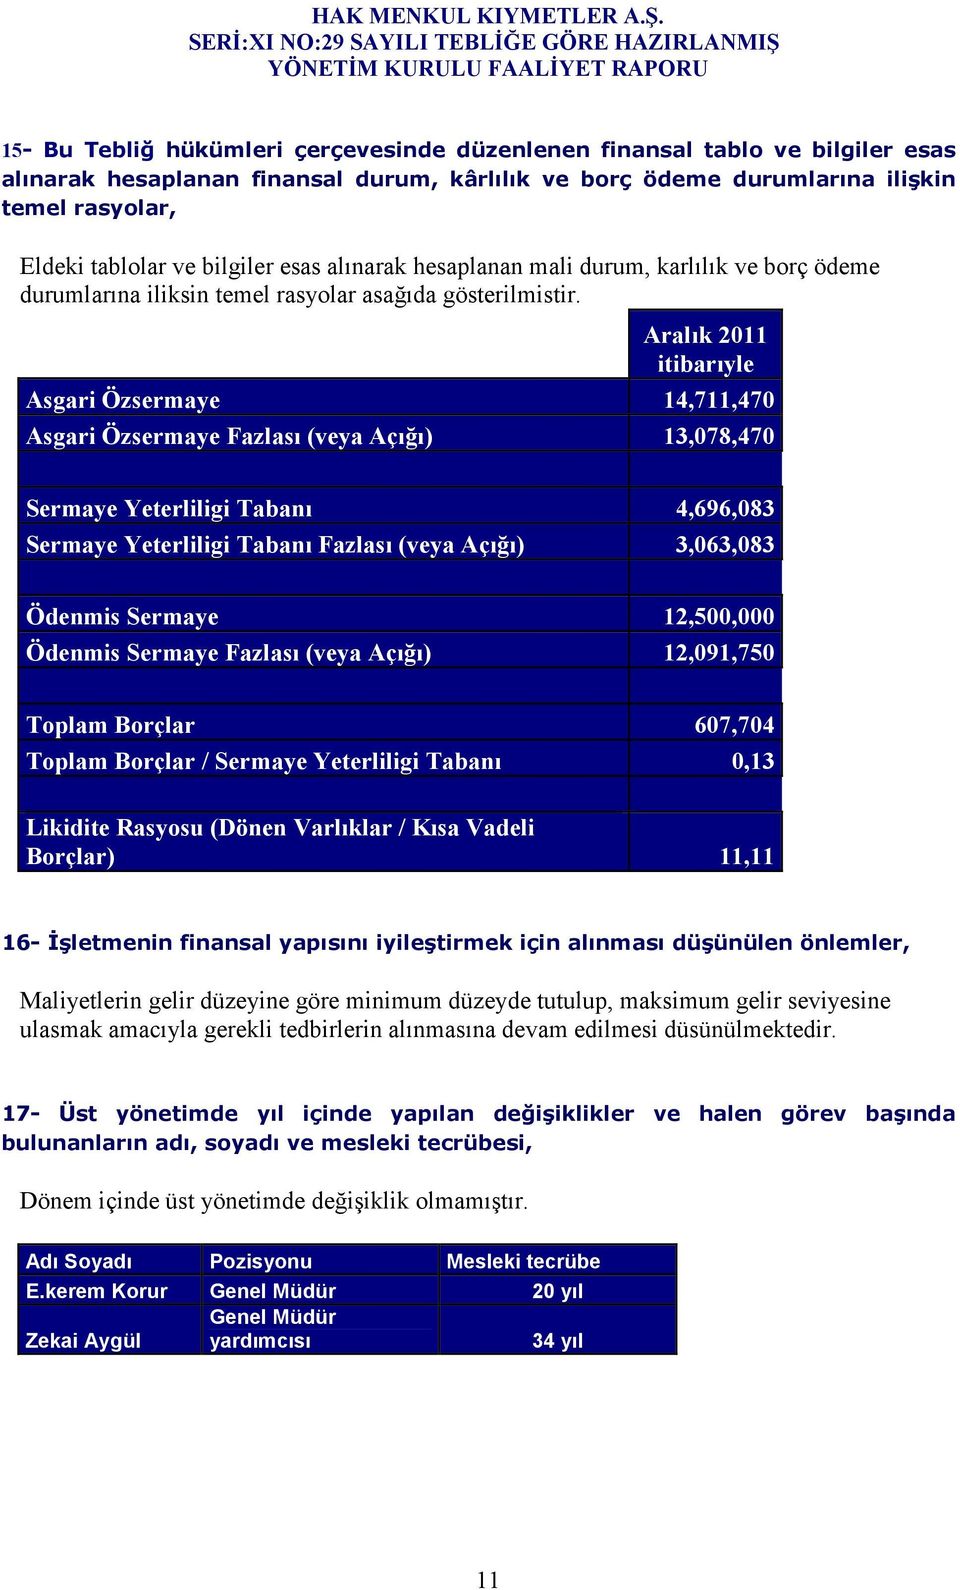 Aralık 2011 itibarıyle Asgari Özsermaye 14,711,470 Asgari Özsermaye Fazlası (veya Açığı) 13,078,470 Sermaye Yeterliligi Tabanı 4,696,083 Sermaye Yeterliligi Tabanı Fazlası (veya Açığı) 3,063,083